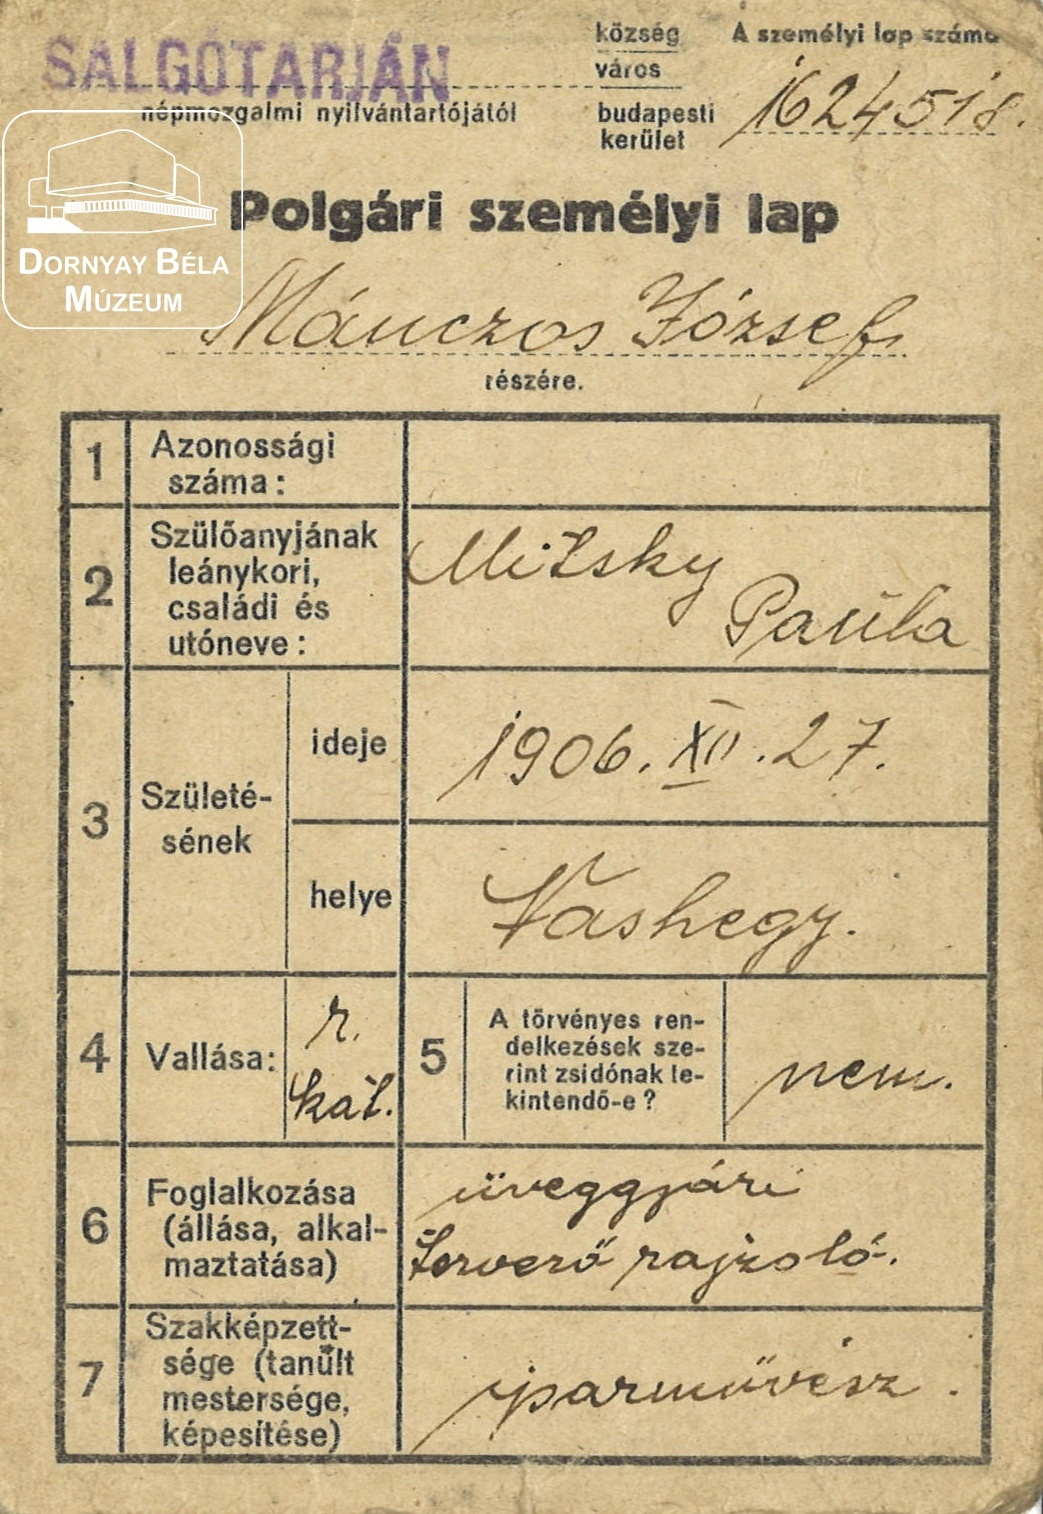 Mánczos József polgári személyi lapja (Dornyay Béla Múzeum, Salgótarján CC BY-NC-SA)